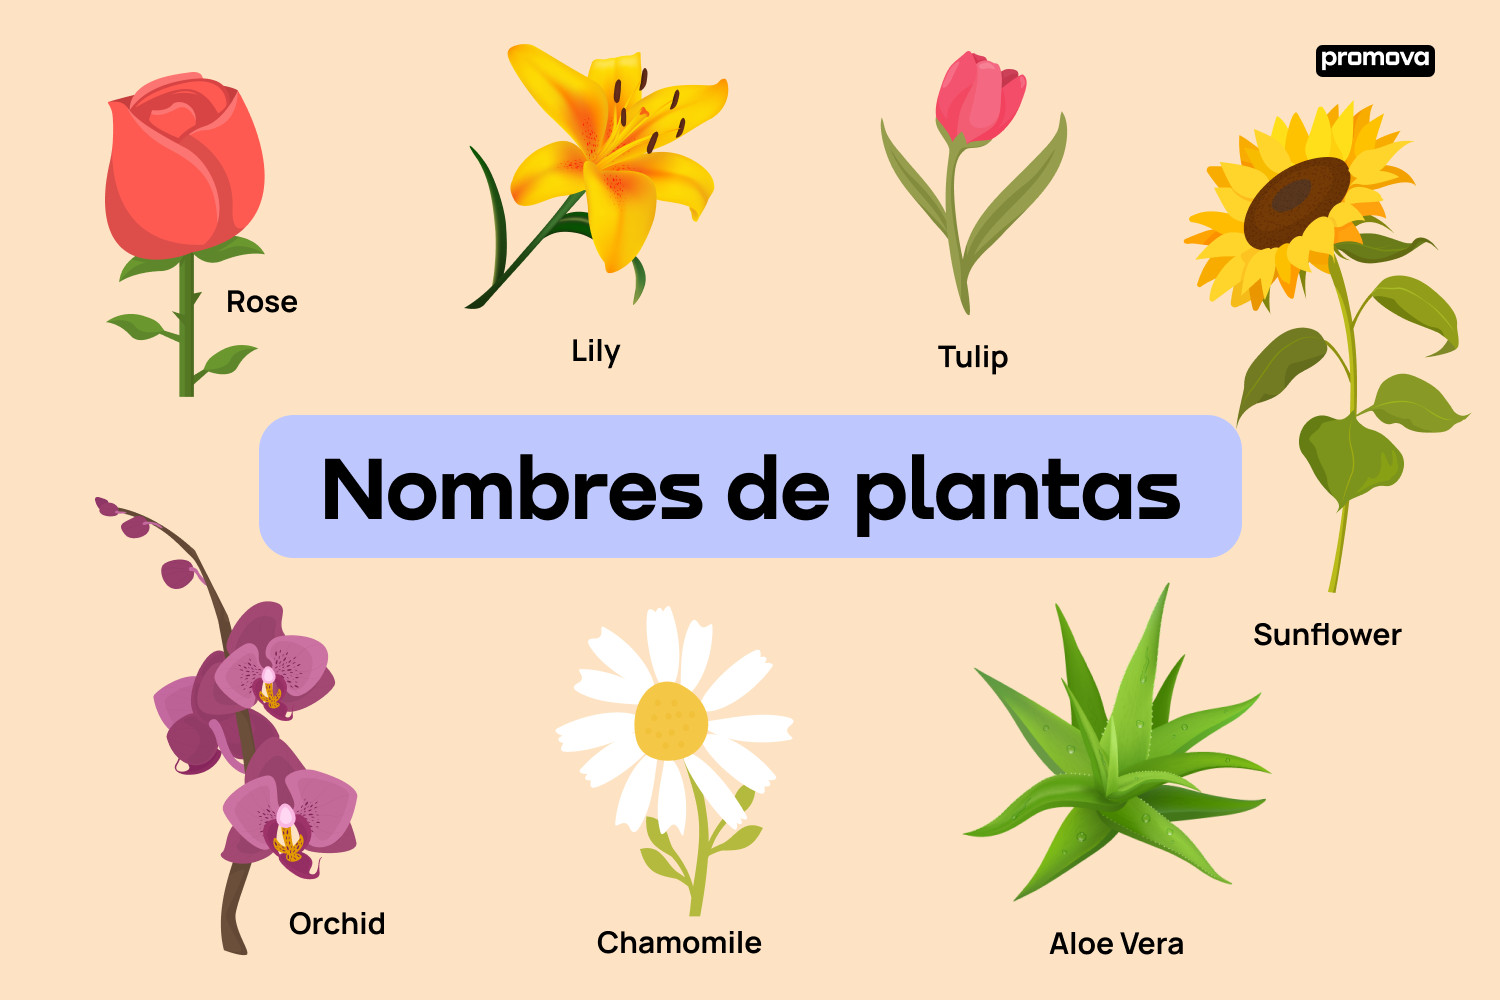 Explorando el reino vegetal: Tipos y nombres de plantas en inglés